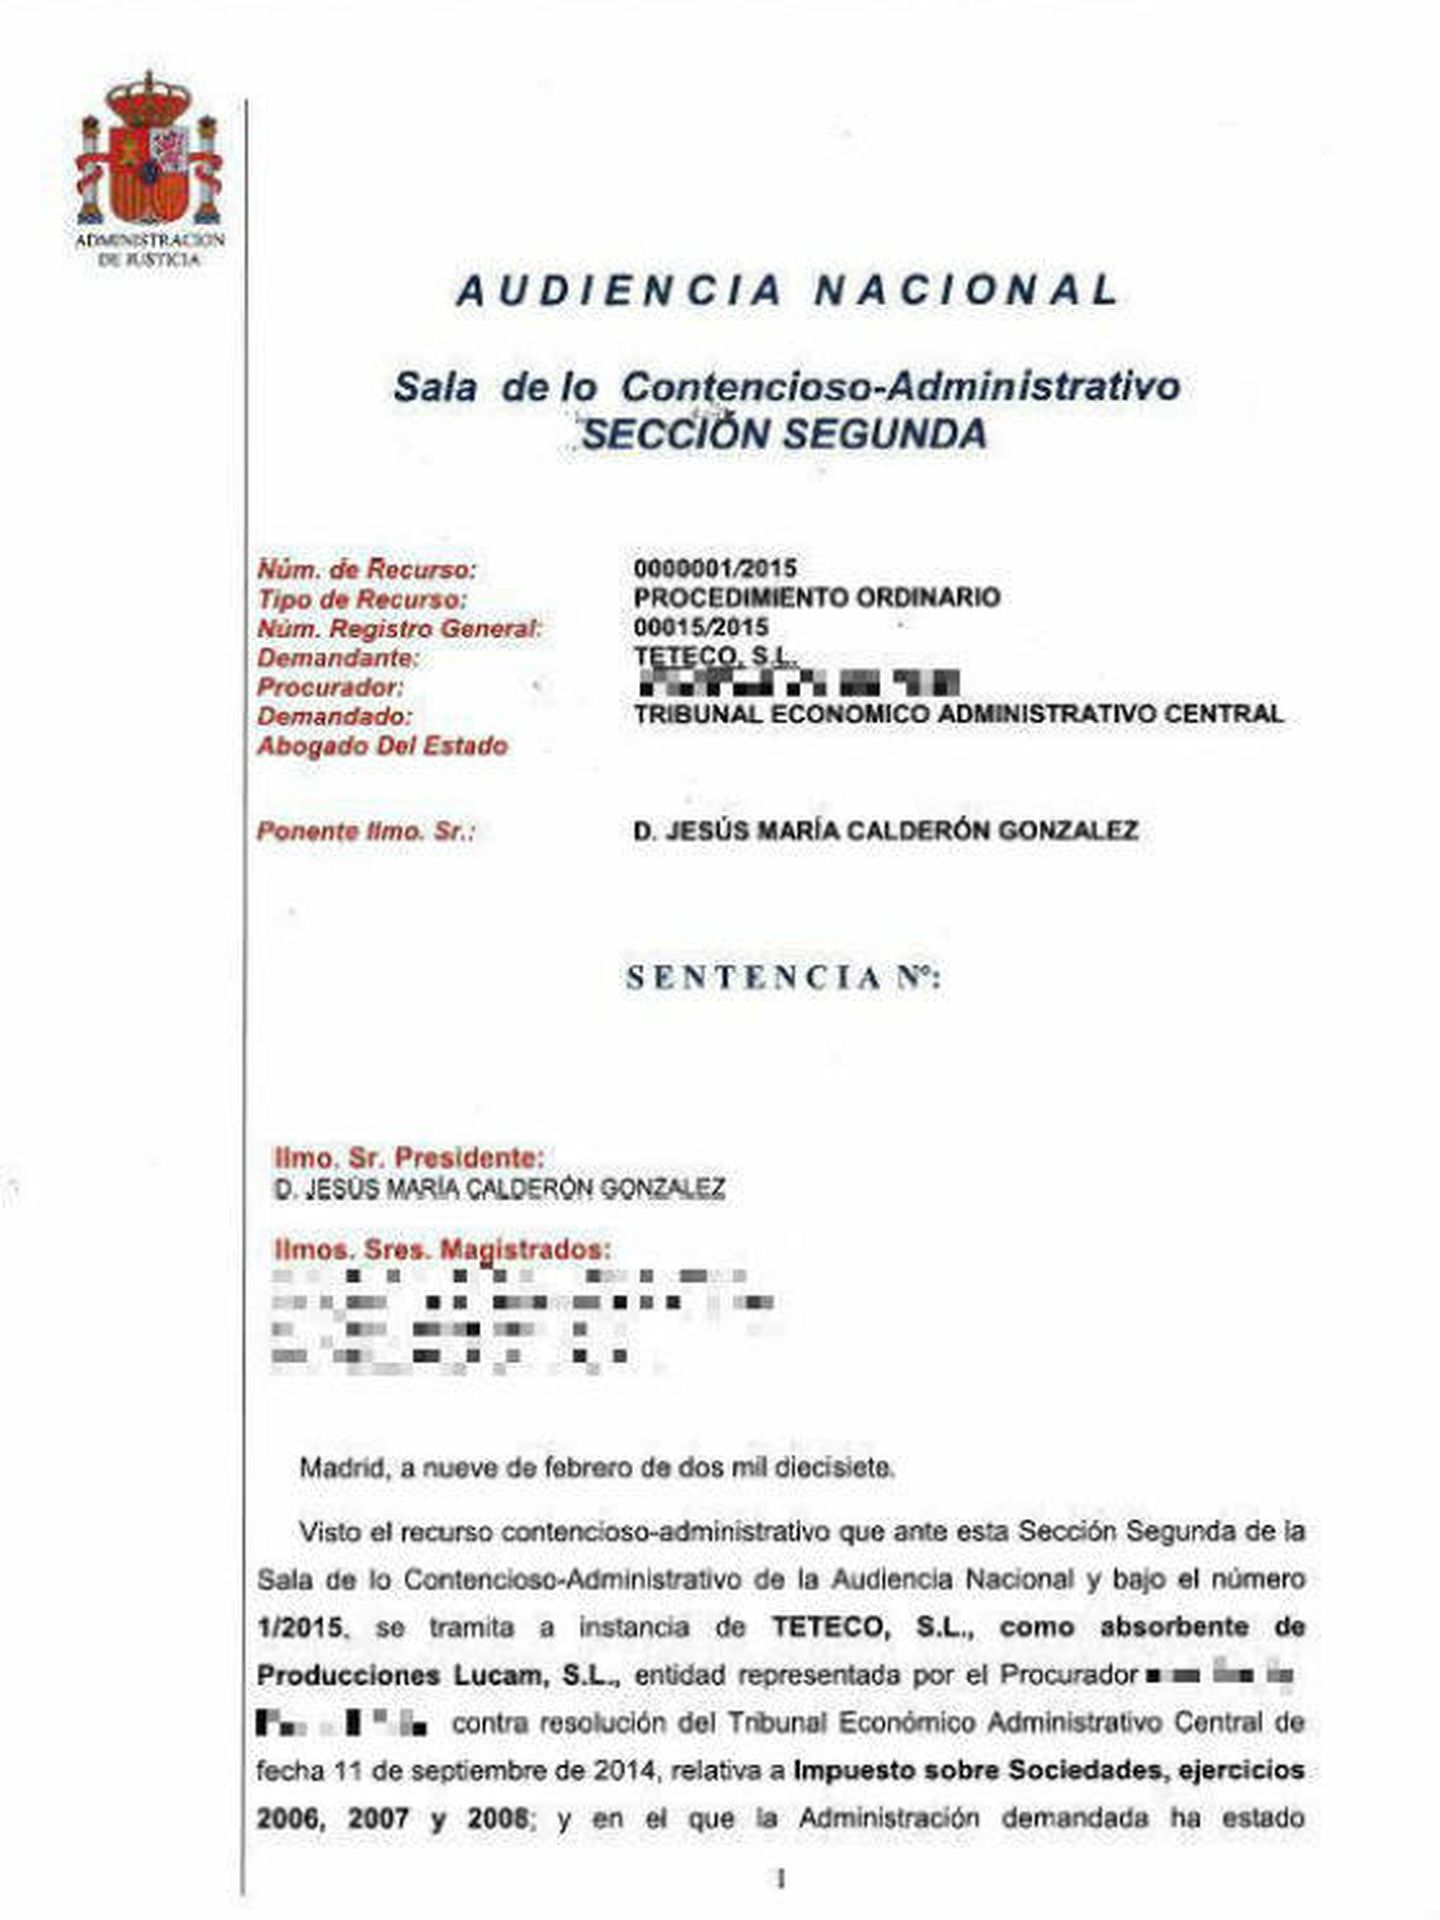 Sentencia de la Audiencia Nacional.